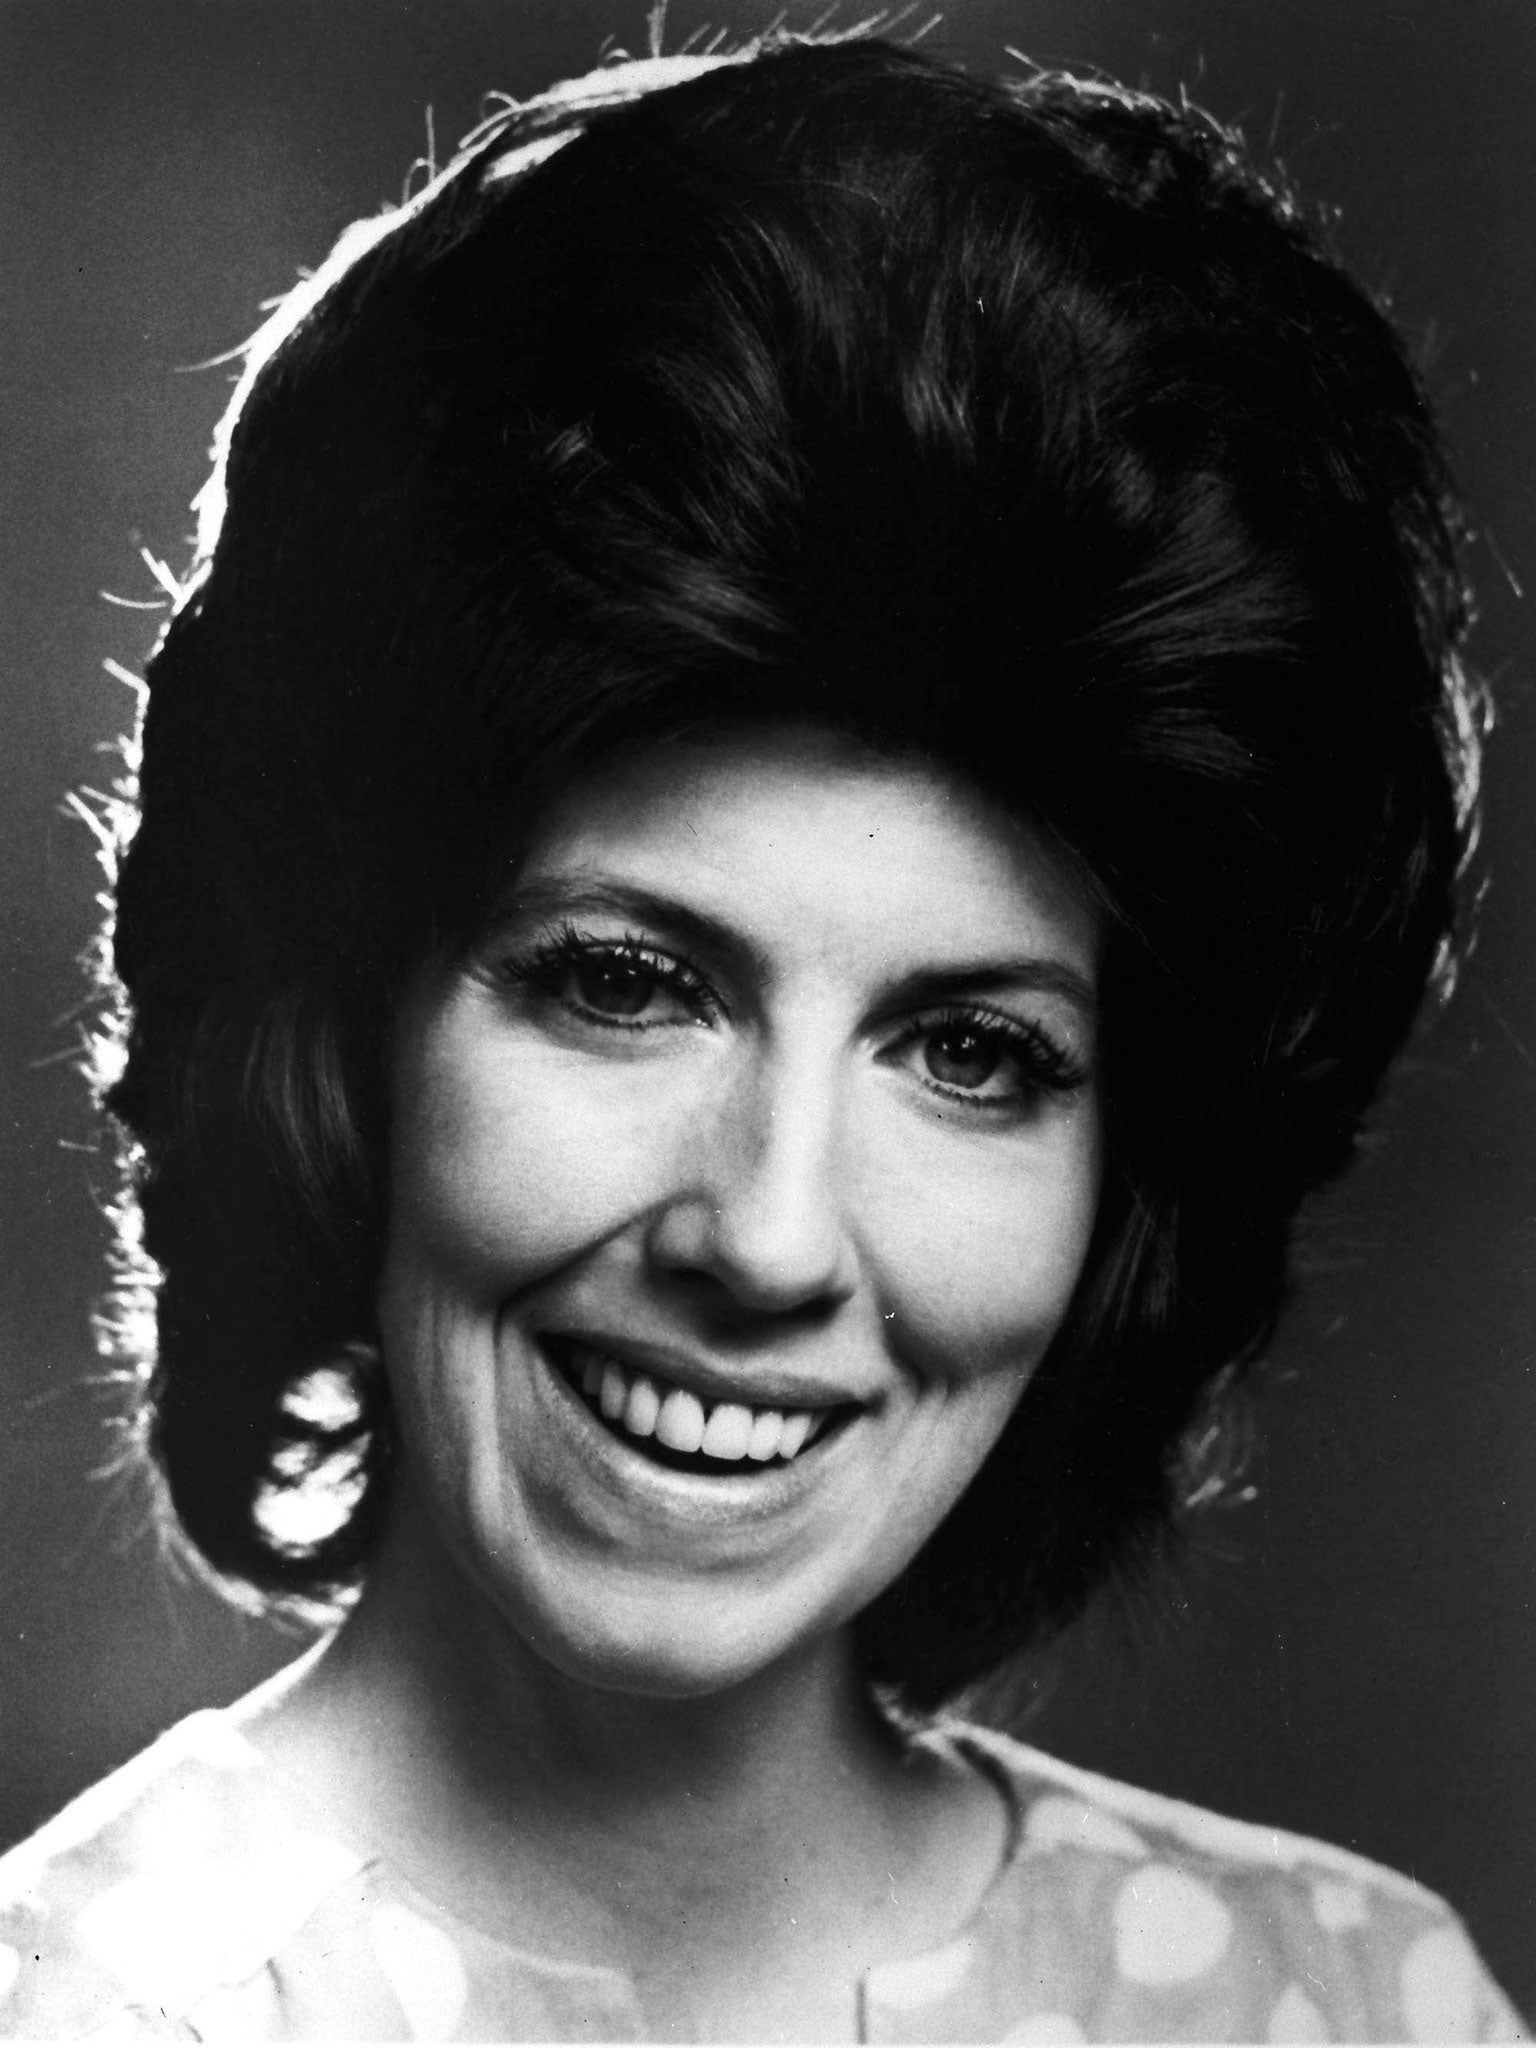 Wallace in 1972, when she began a six-year run on CBS's 'The Bob Newhart Show'